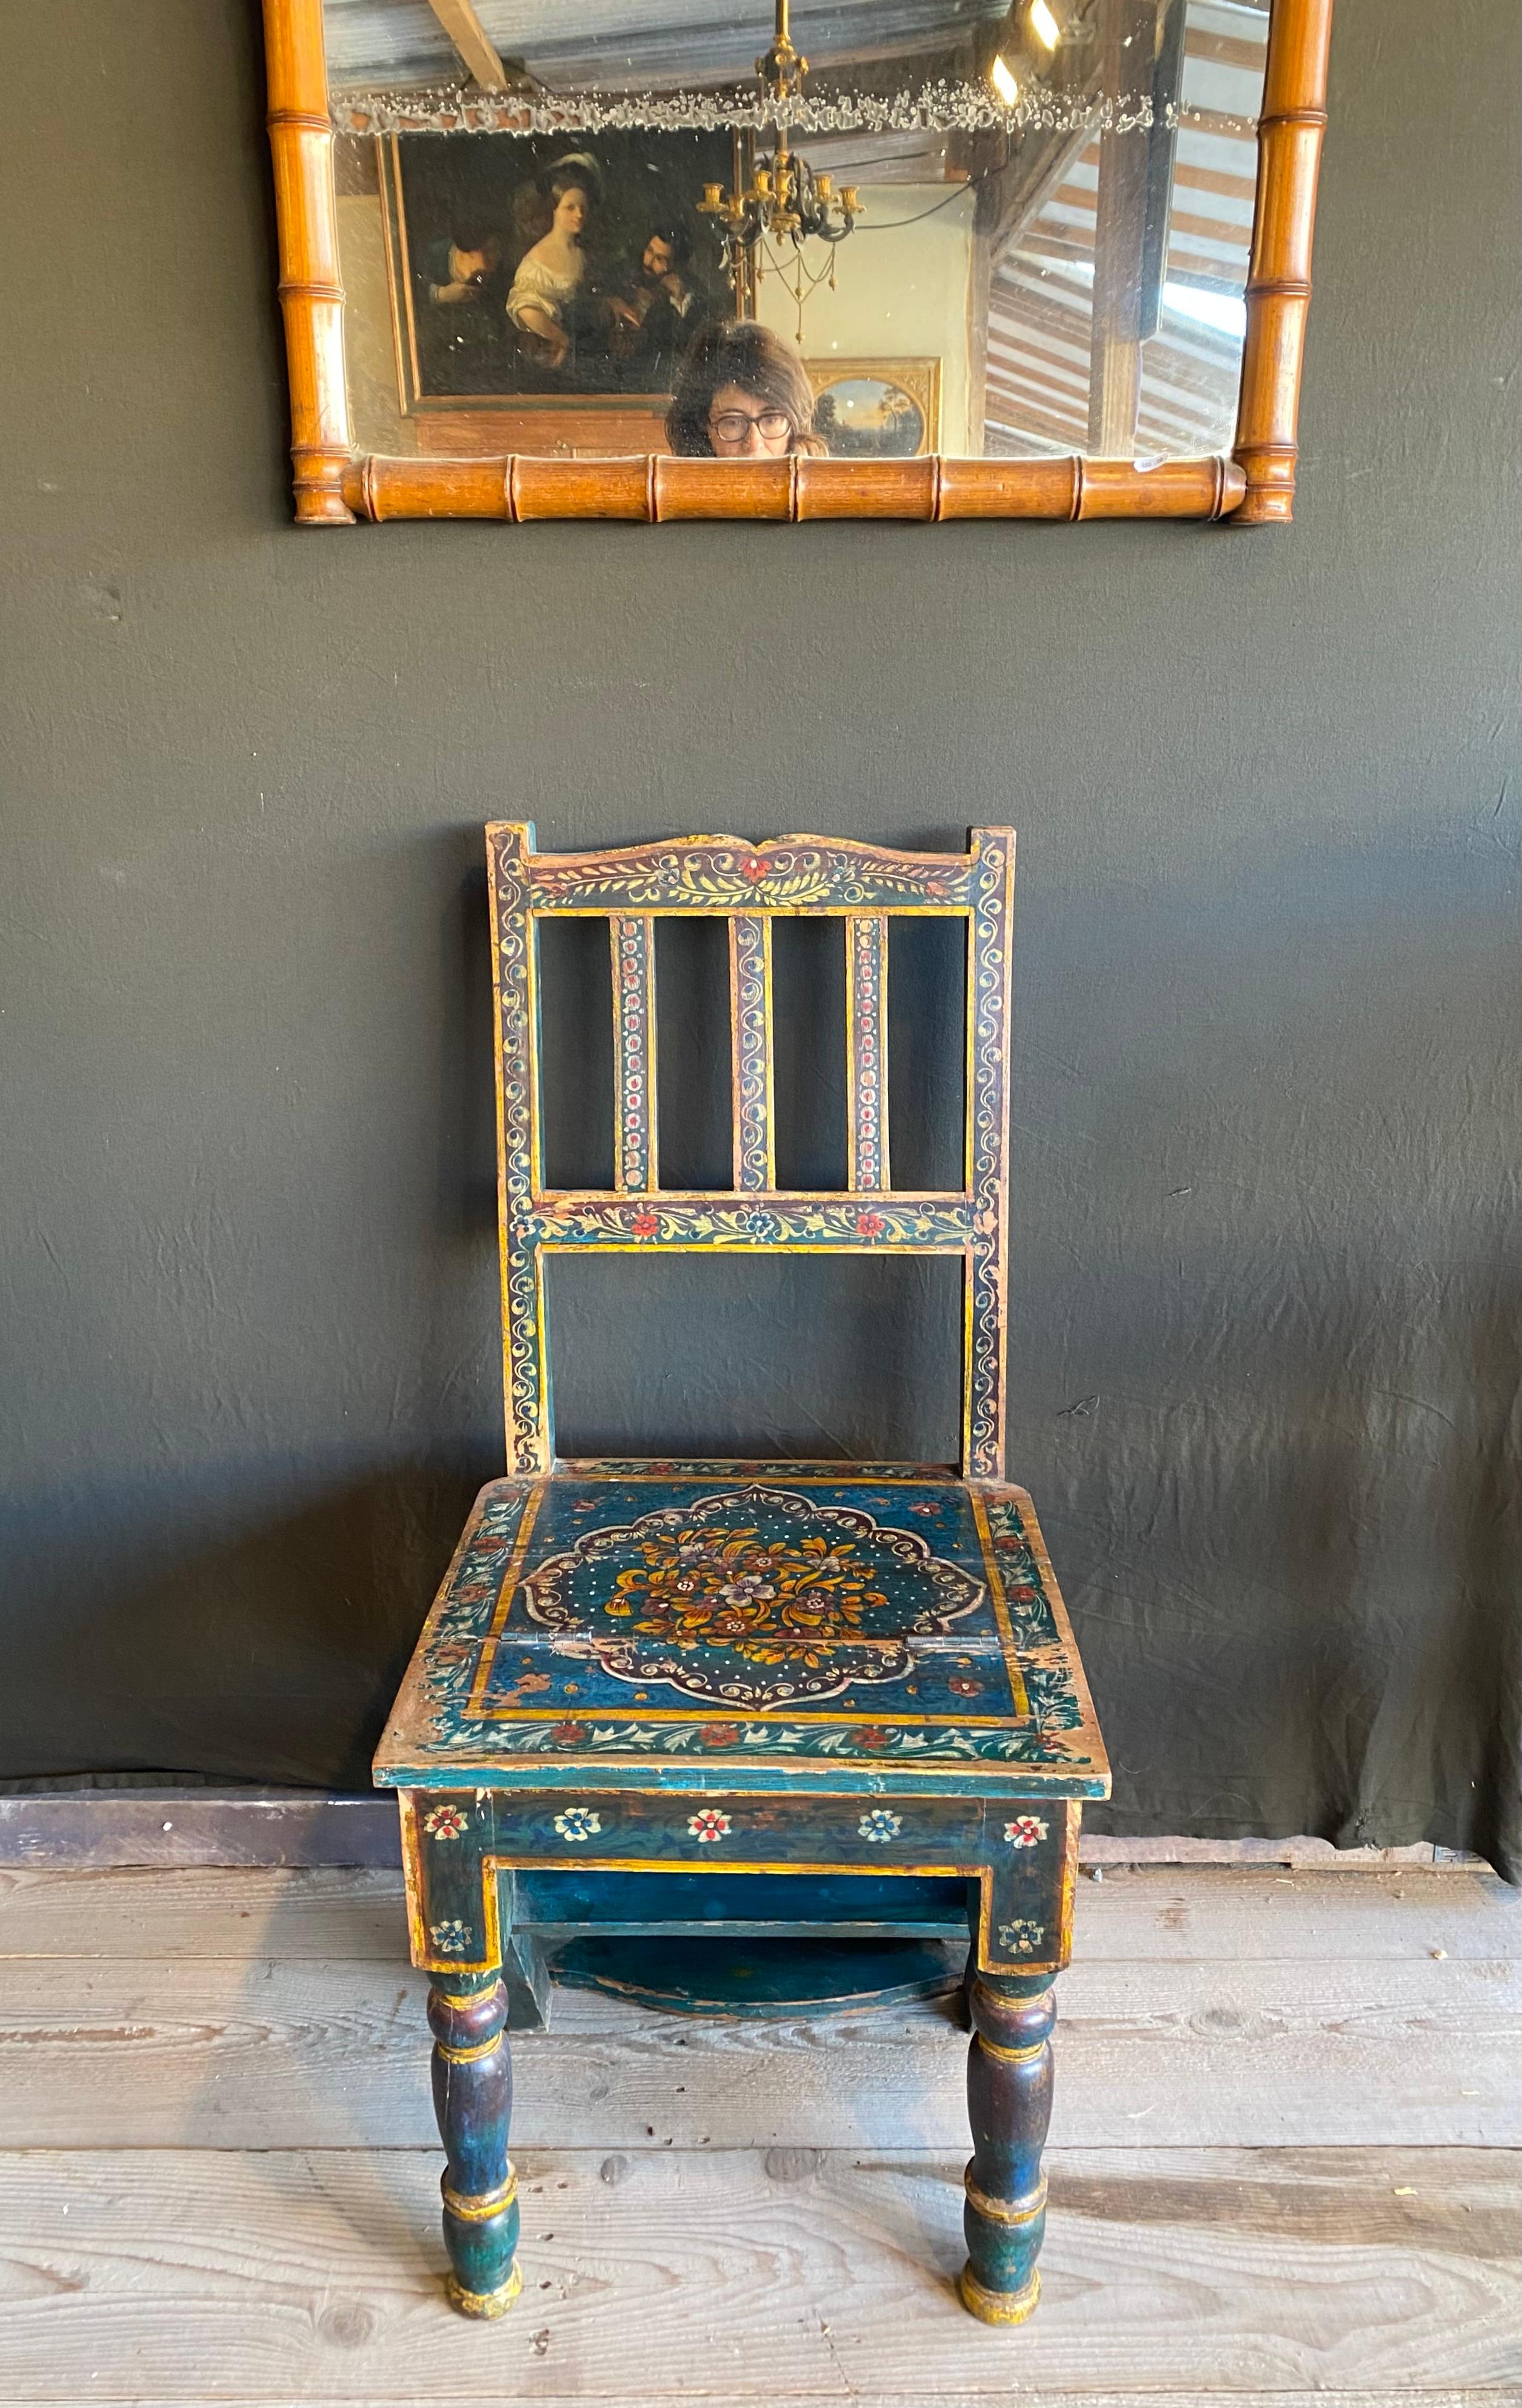 Délicieuse chaise en bois peinte à la main 
Il se transforme facilement en tabouret de pied
Très bon état.
Très beaux motifs peints à la main 